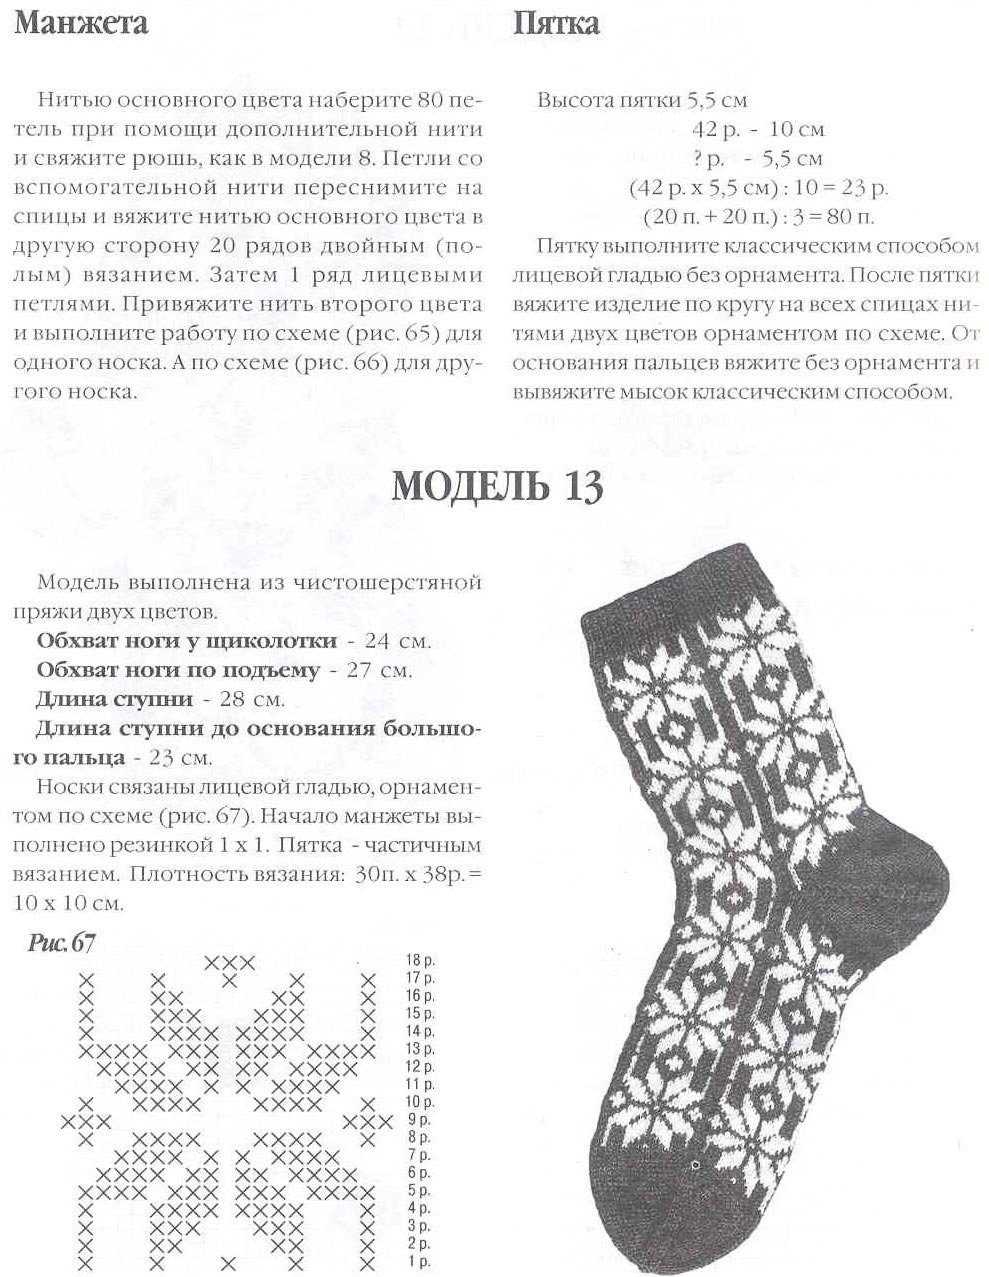 Вязание носков спицами для начинающих пошагово с подробными схемами, инстру...